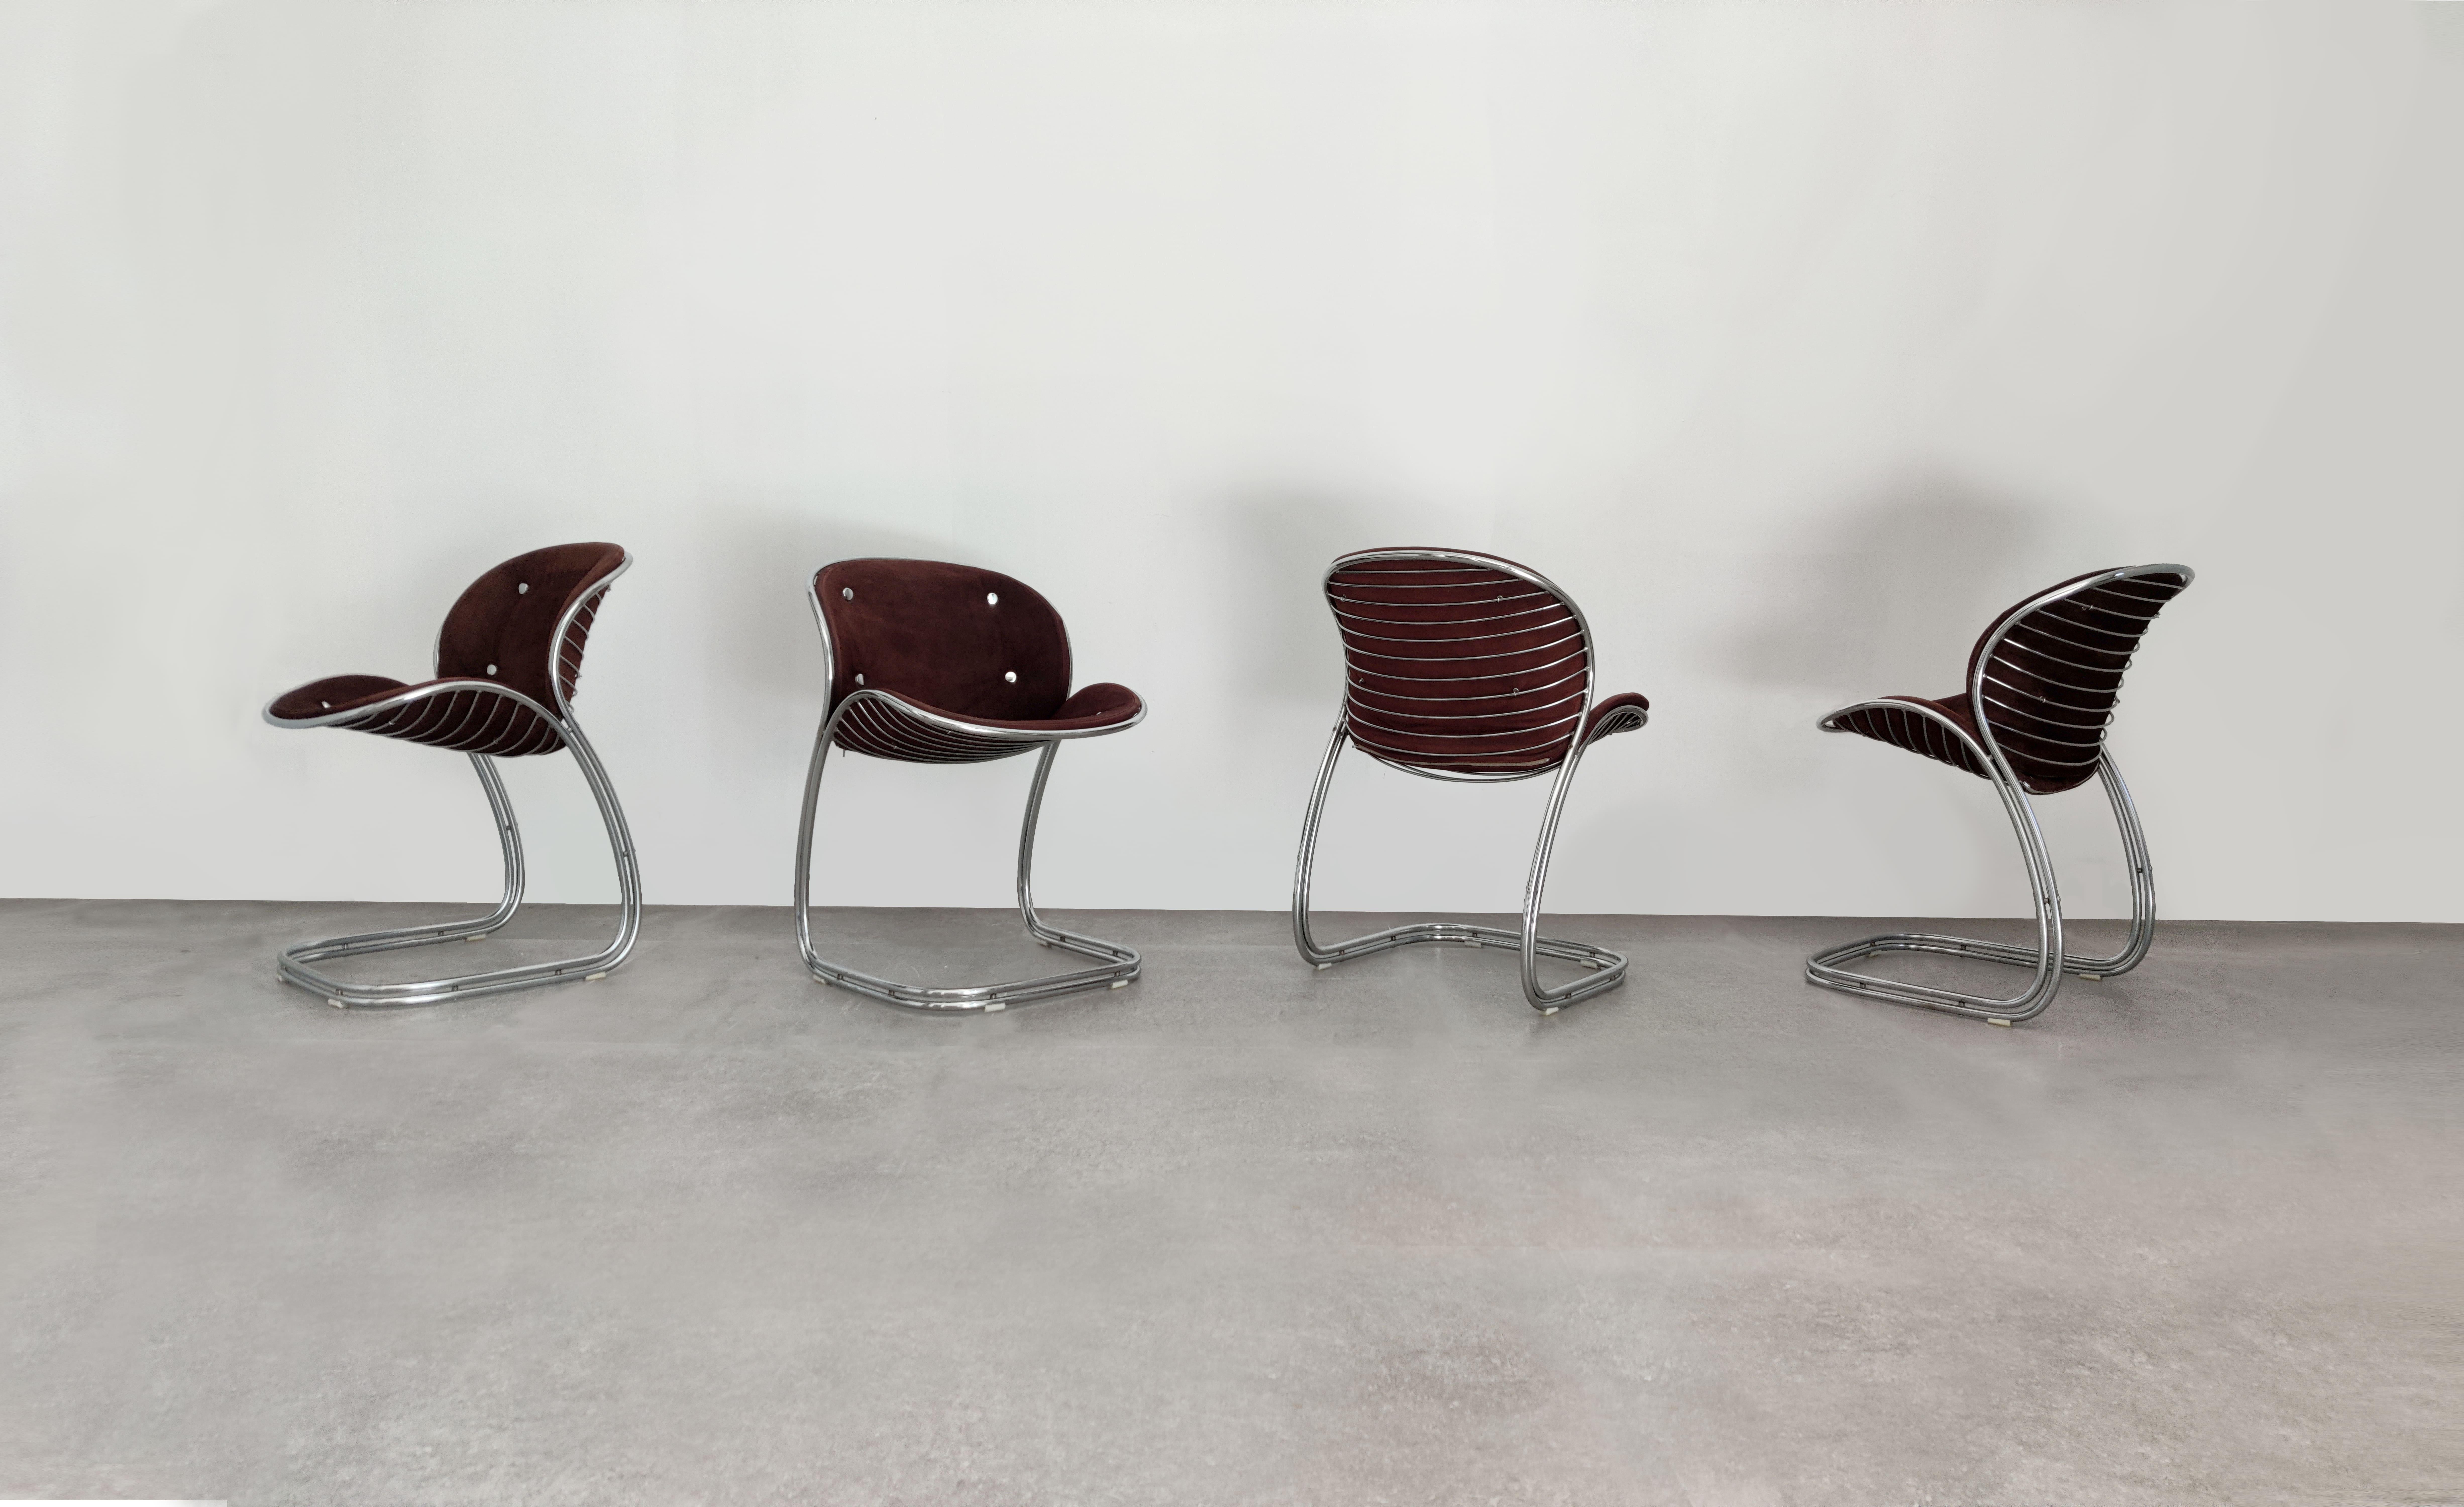 Ajoutez une touche d'élégance intemporelle à votre intérieur avec ce superbe ensemble de chaises Sabrina, conçu par le célèbre designer italien Gastone Rinaldi et produit par Vidal Grau. Les chaises sont dotées d'une structure chromée élégante et